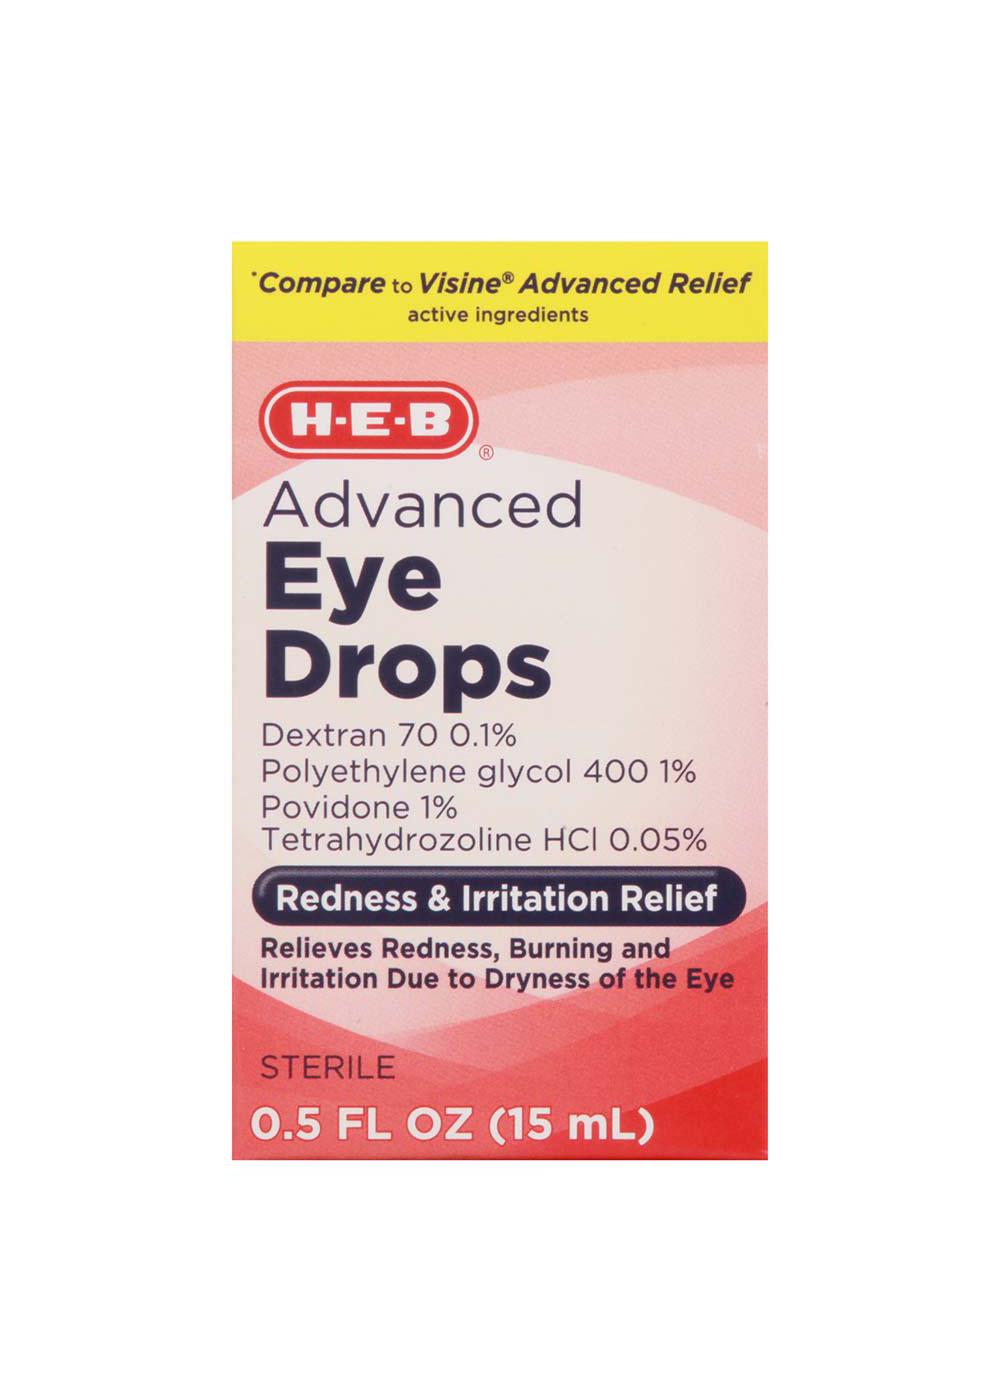 H-E-B Advanced Eye Drops